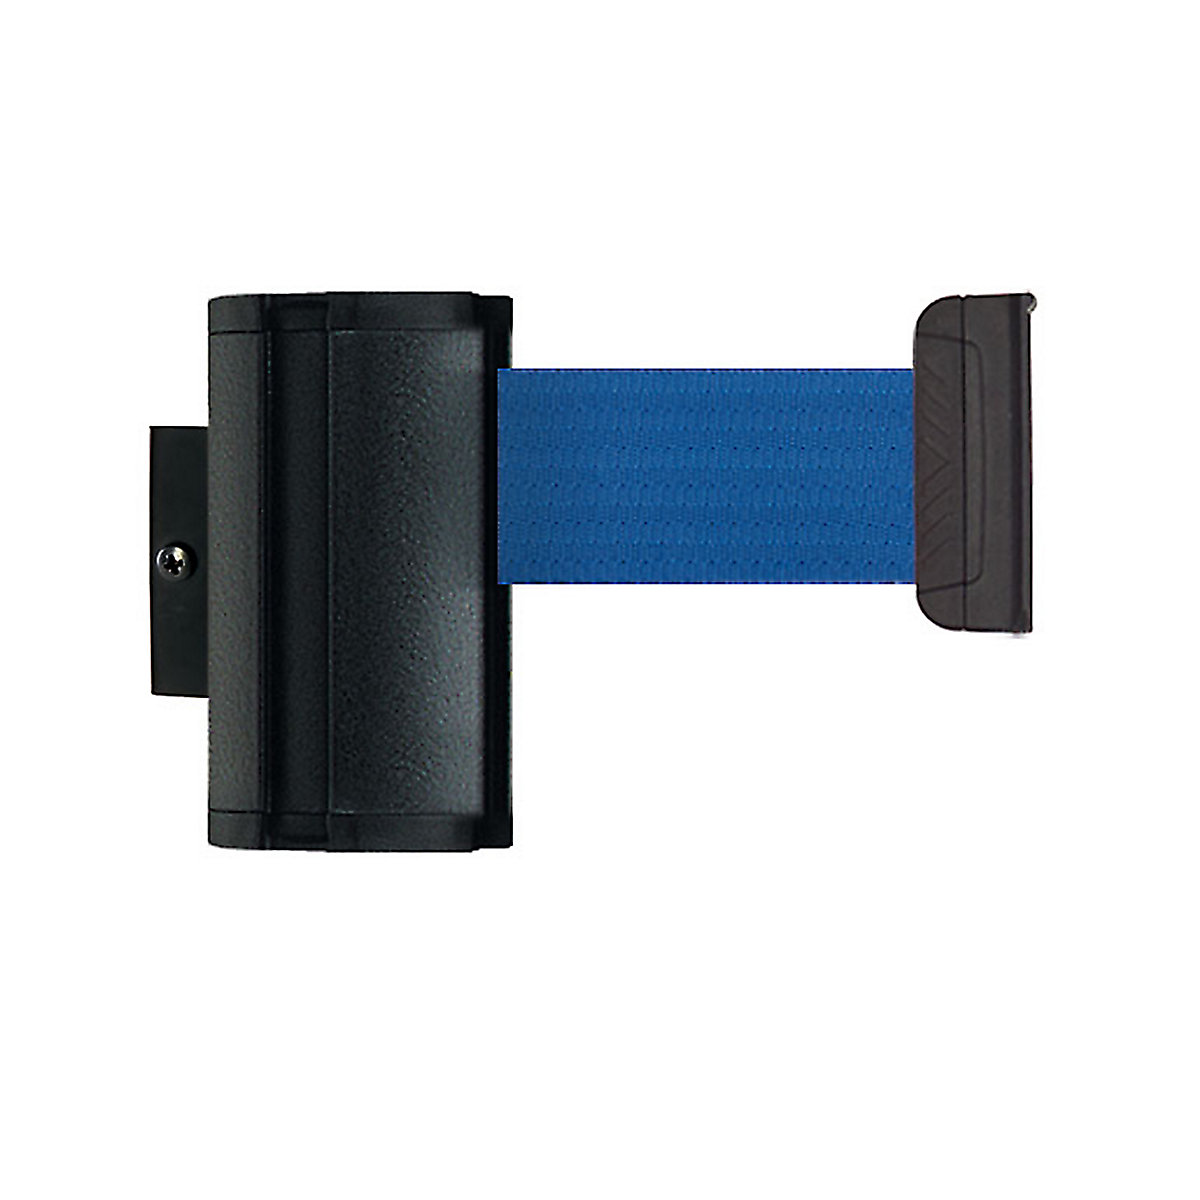 Wall Mount tape belt cartridge, belt extends to max. 2300 mm, belt colour blue-7